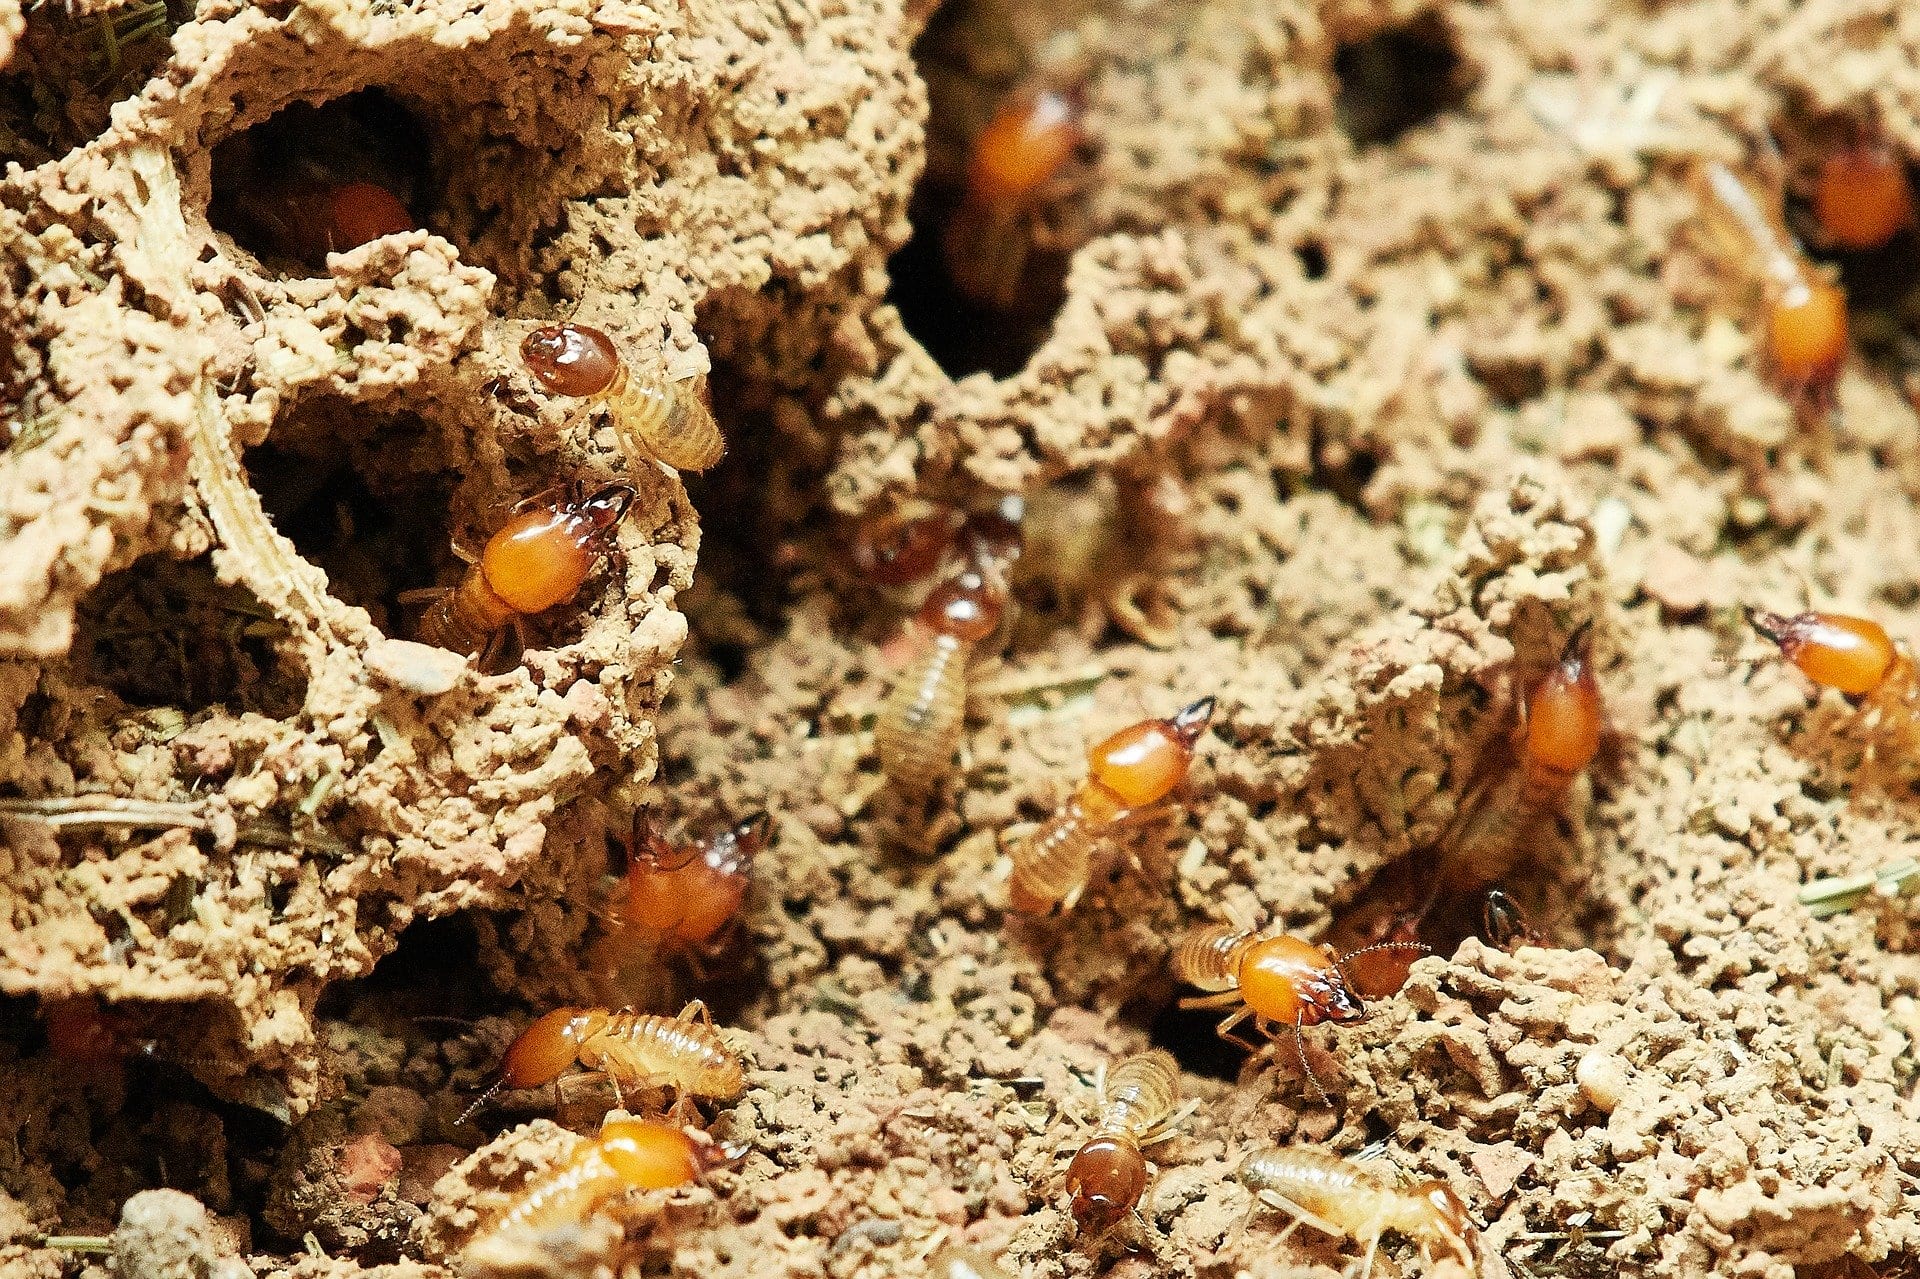 inside termites nest